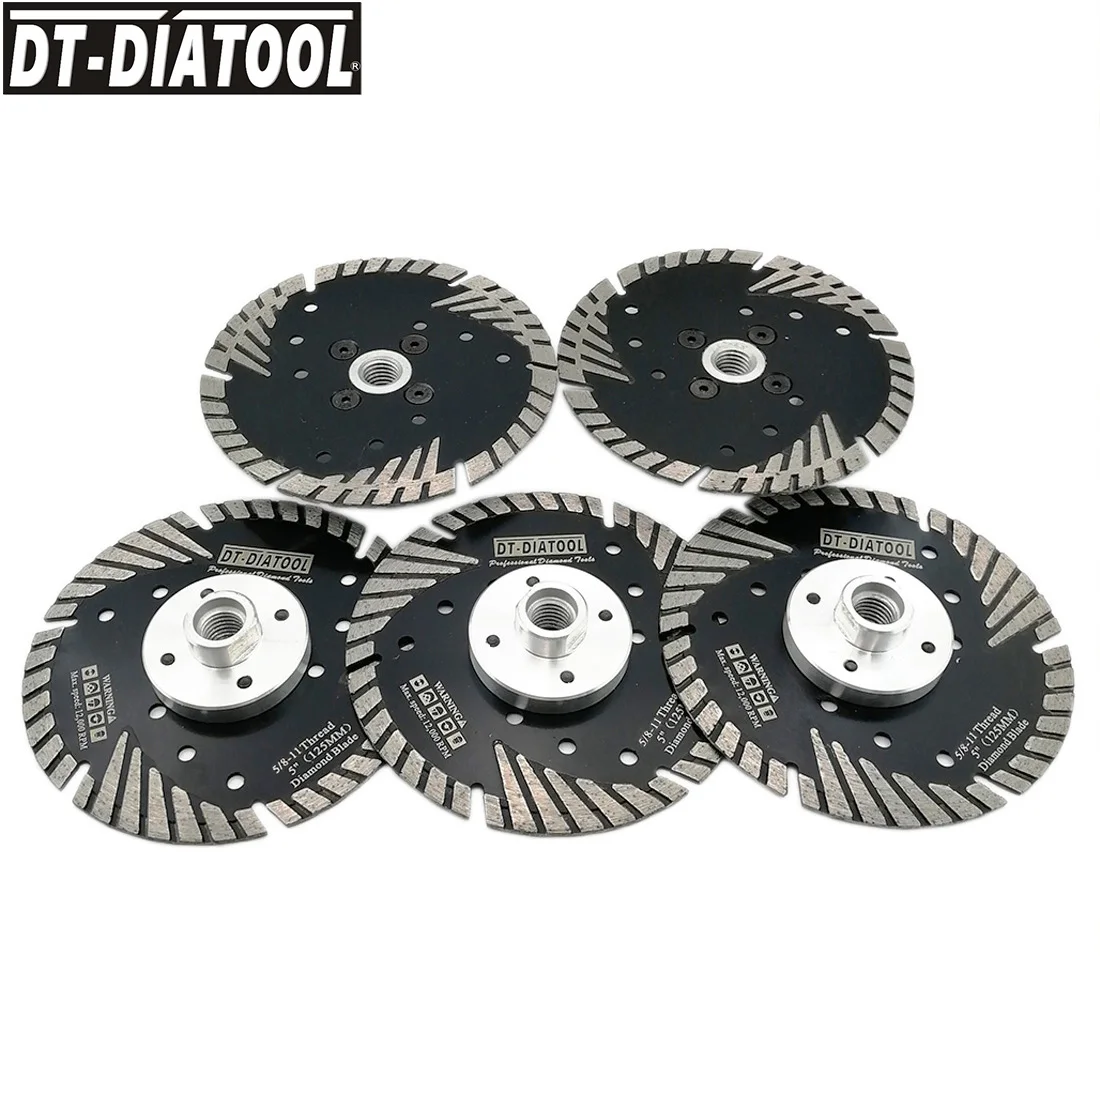 DT-DIATOOL 5 шт. 125 мм/5 дюймов Professional качество горячего прессования алмазные режущие диски турбо лезвие для бетонного кирпича 5/8-11 нить